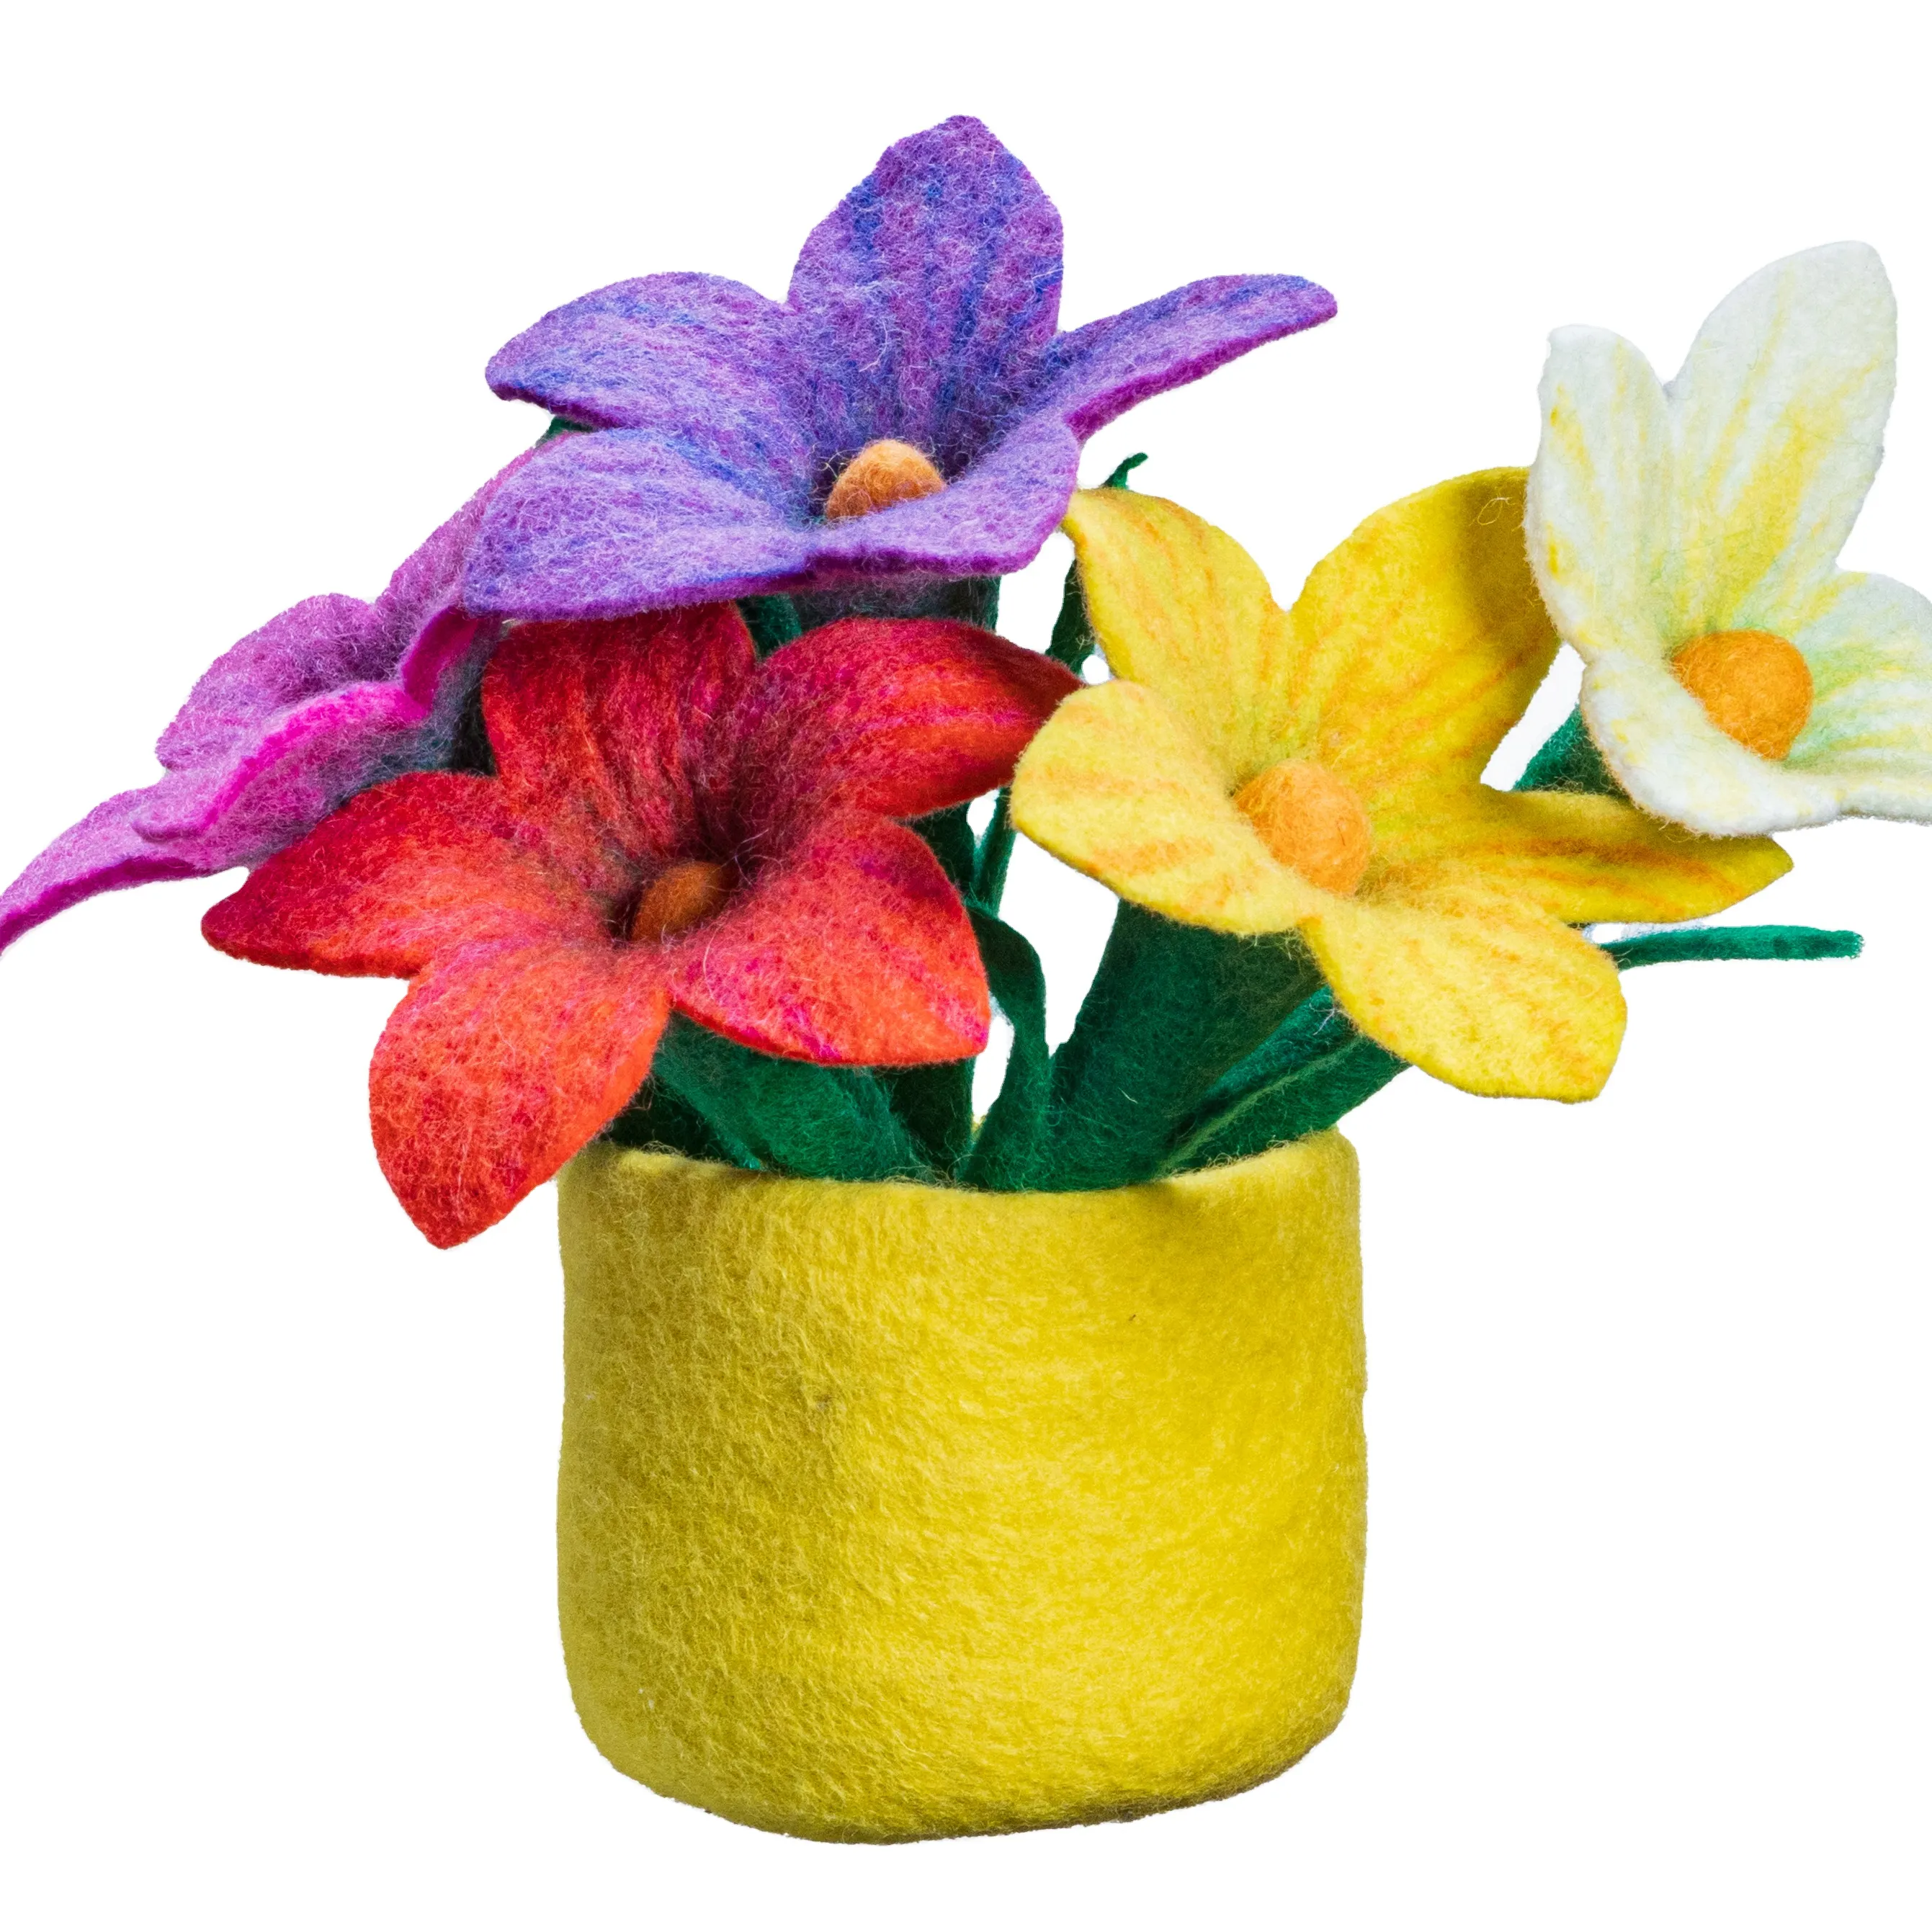 En iyi yapay renkli çiçek toptan paket: yün dekorasyon renkli keçe çiçekler için parti ayıklayacaktır ve festivali